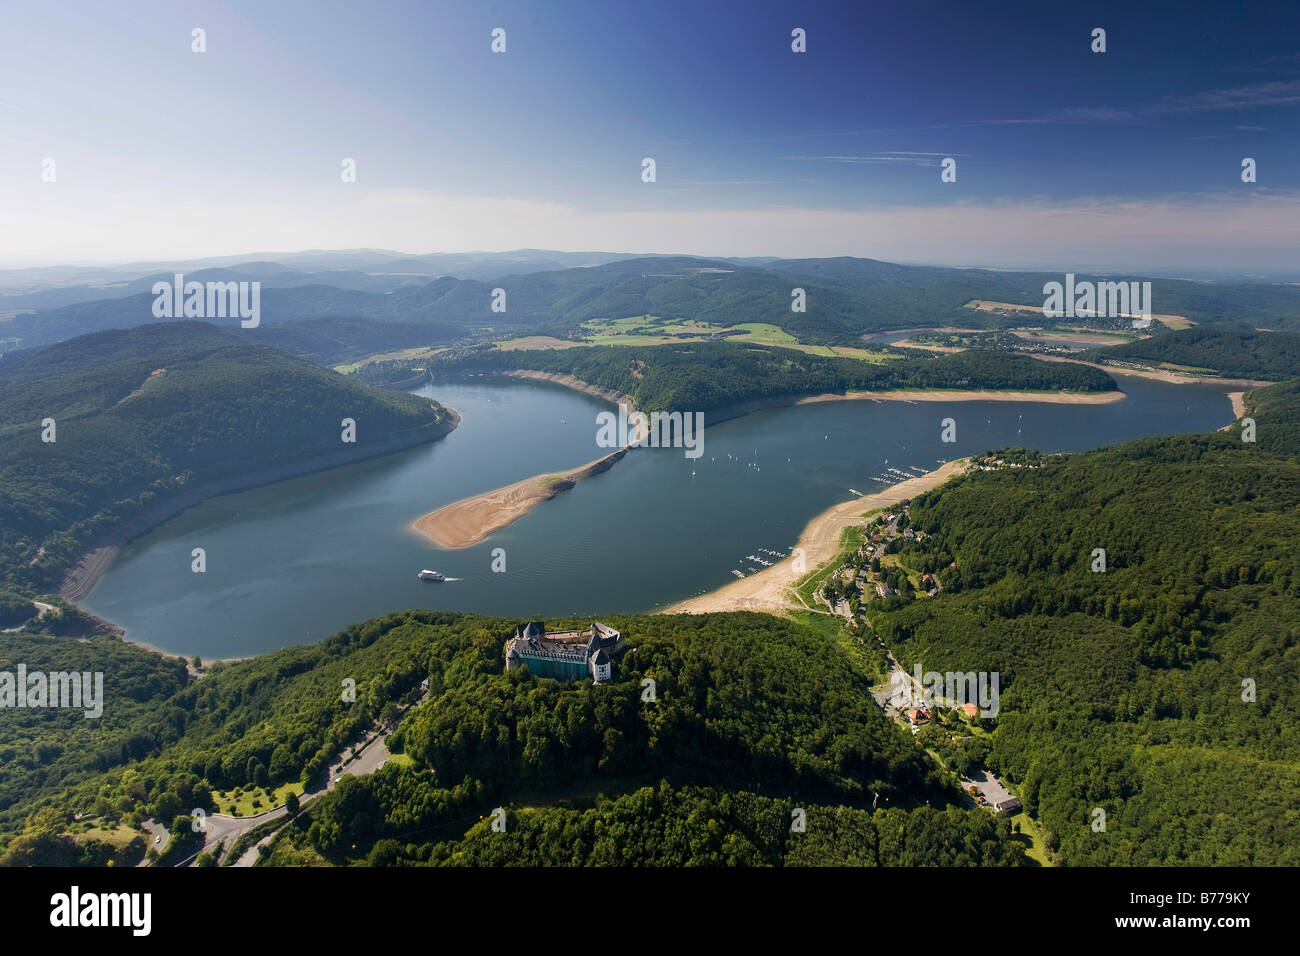 Photographie aérienne, château de Waldeck, lac Edersee, réduit à moins d'un quart de son volume normal d'eau, ville de Korbach, Banque D'Images